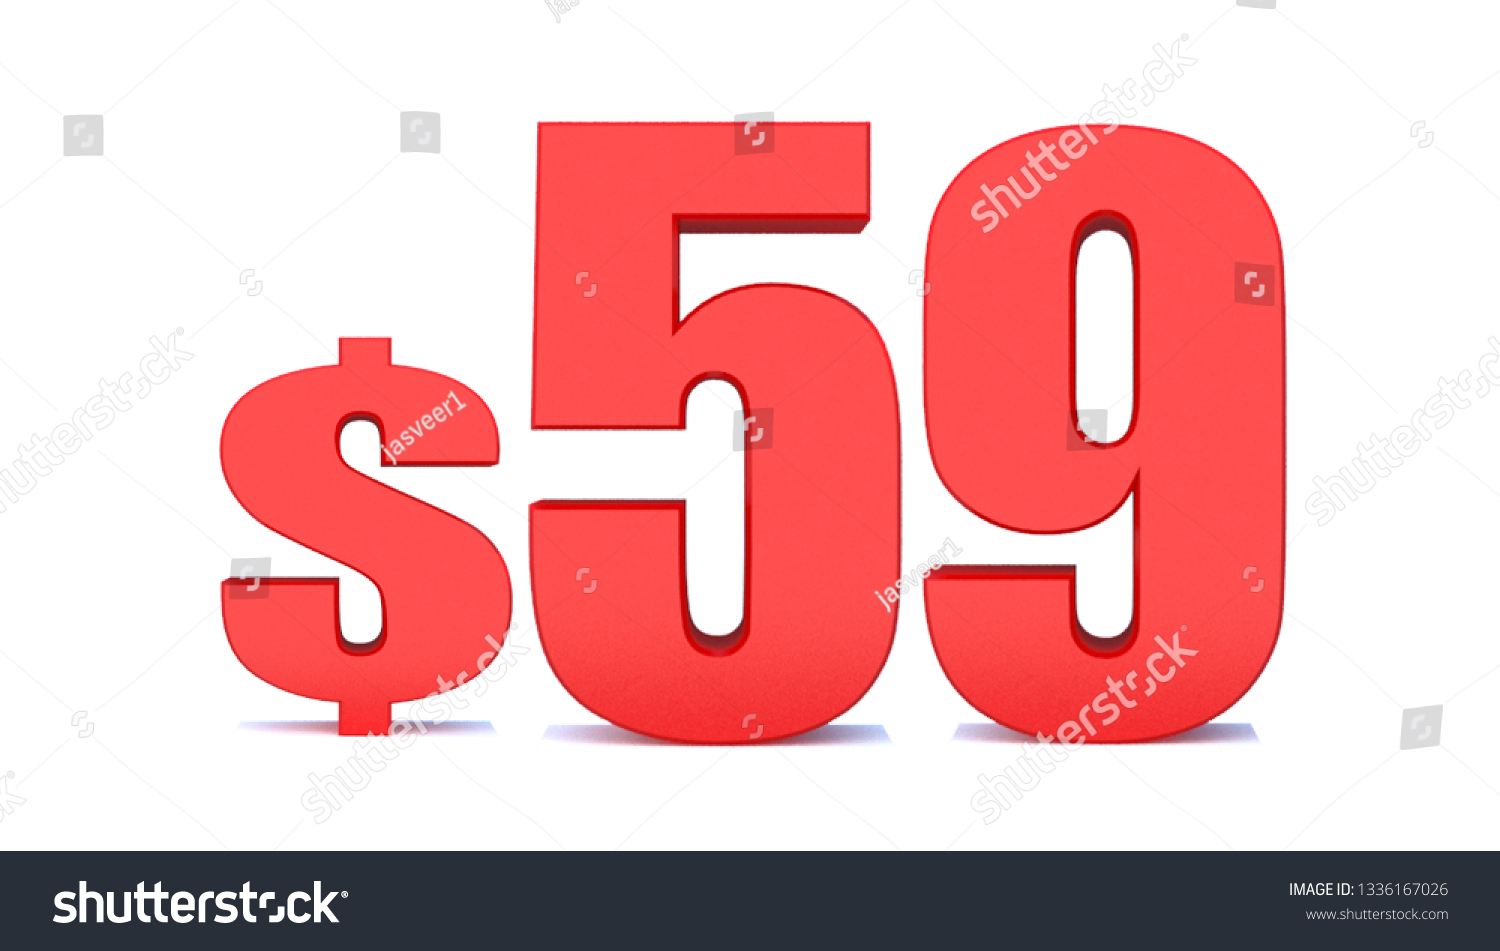 59 Dollar 59 Word On White Stock Illustration 1336167026 | Shutterstock